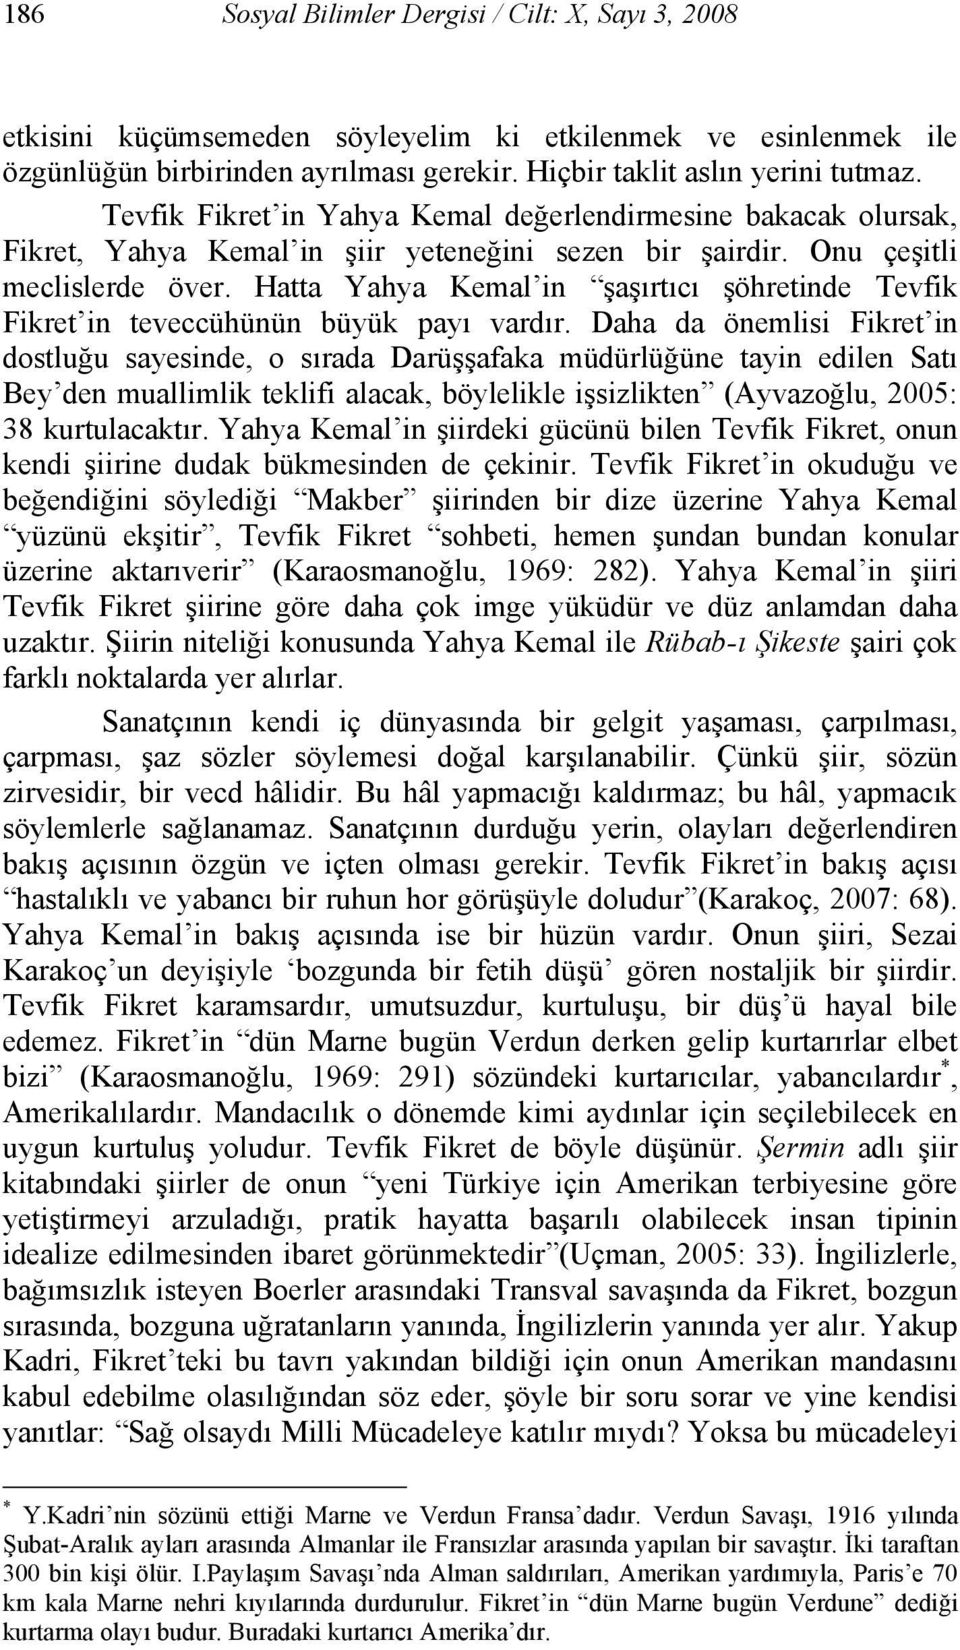 Hatta Yahya Kemal in şaşırtıcı şöhretinde Tevfik Fikret in teveccühünün büyük payı vardır.